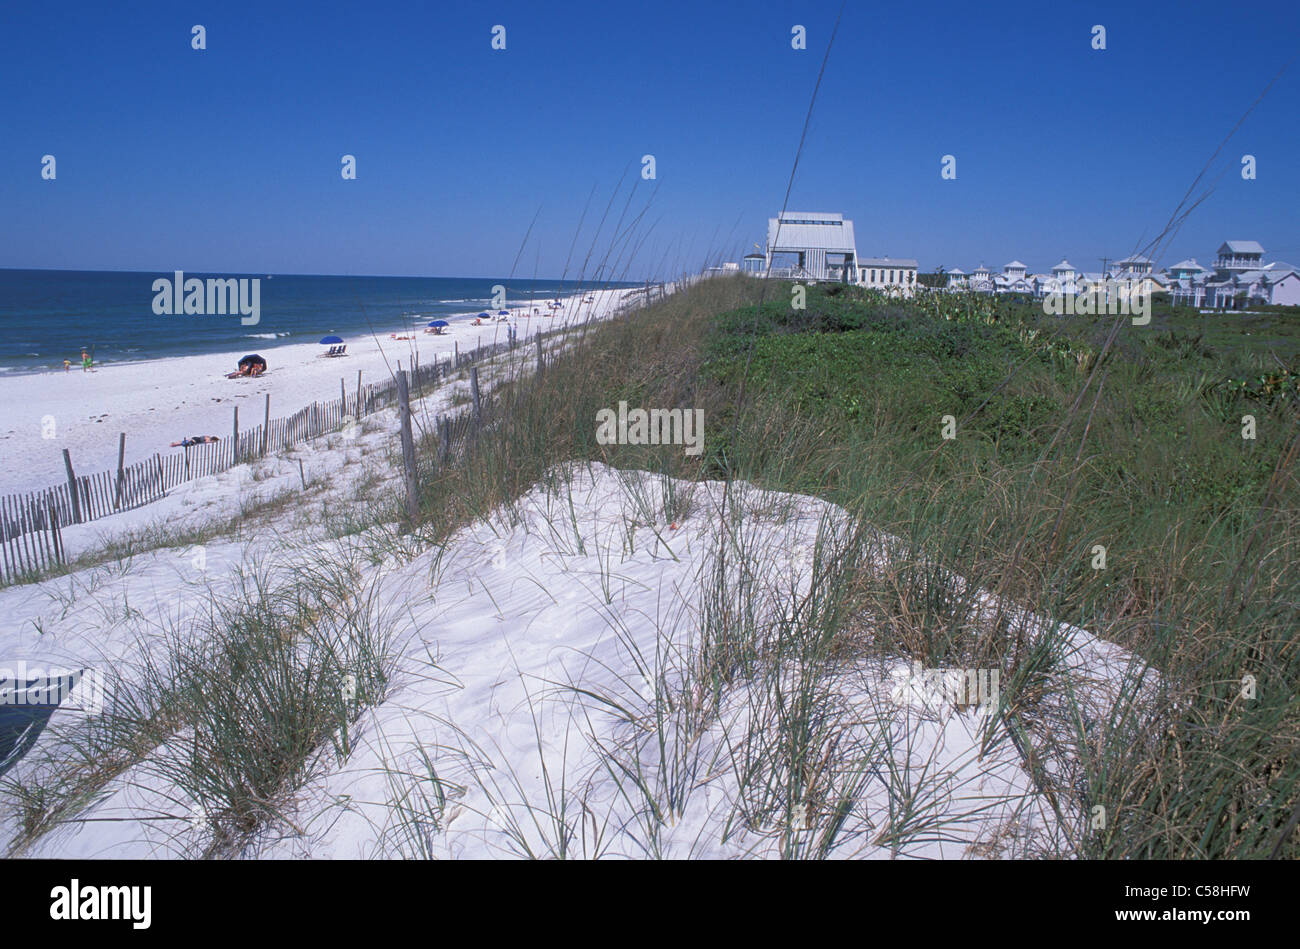 Mare e Costa del Golfo, Florida Panhandle, Florida, Stati Uniti d'America, Stati Uniti, America, sabbia, dune, spiaggia Foto Stock